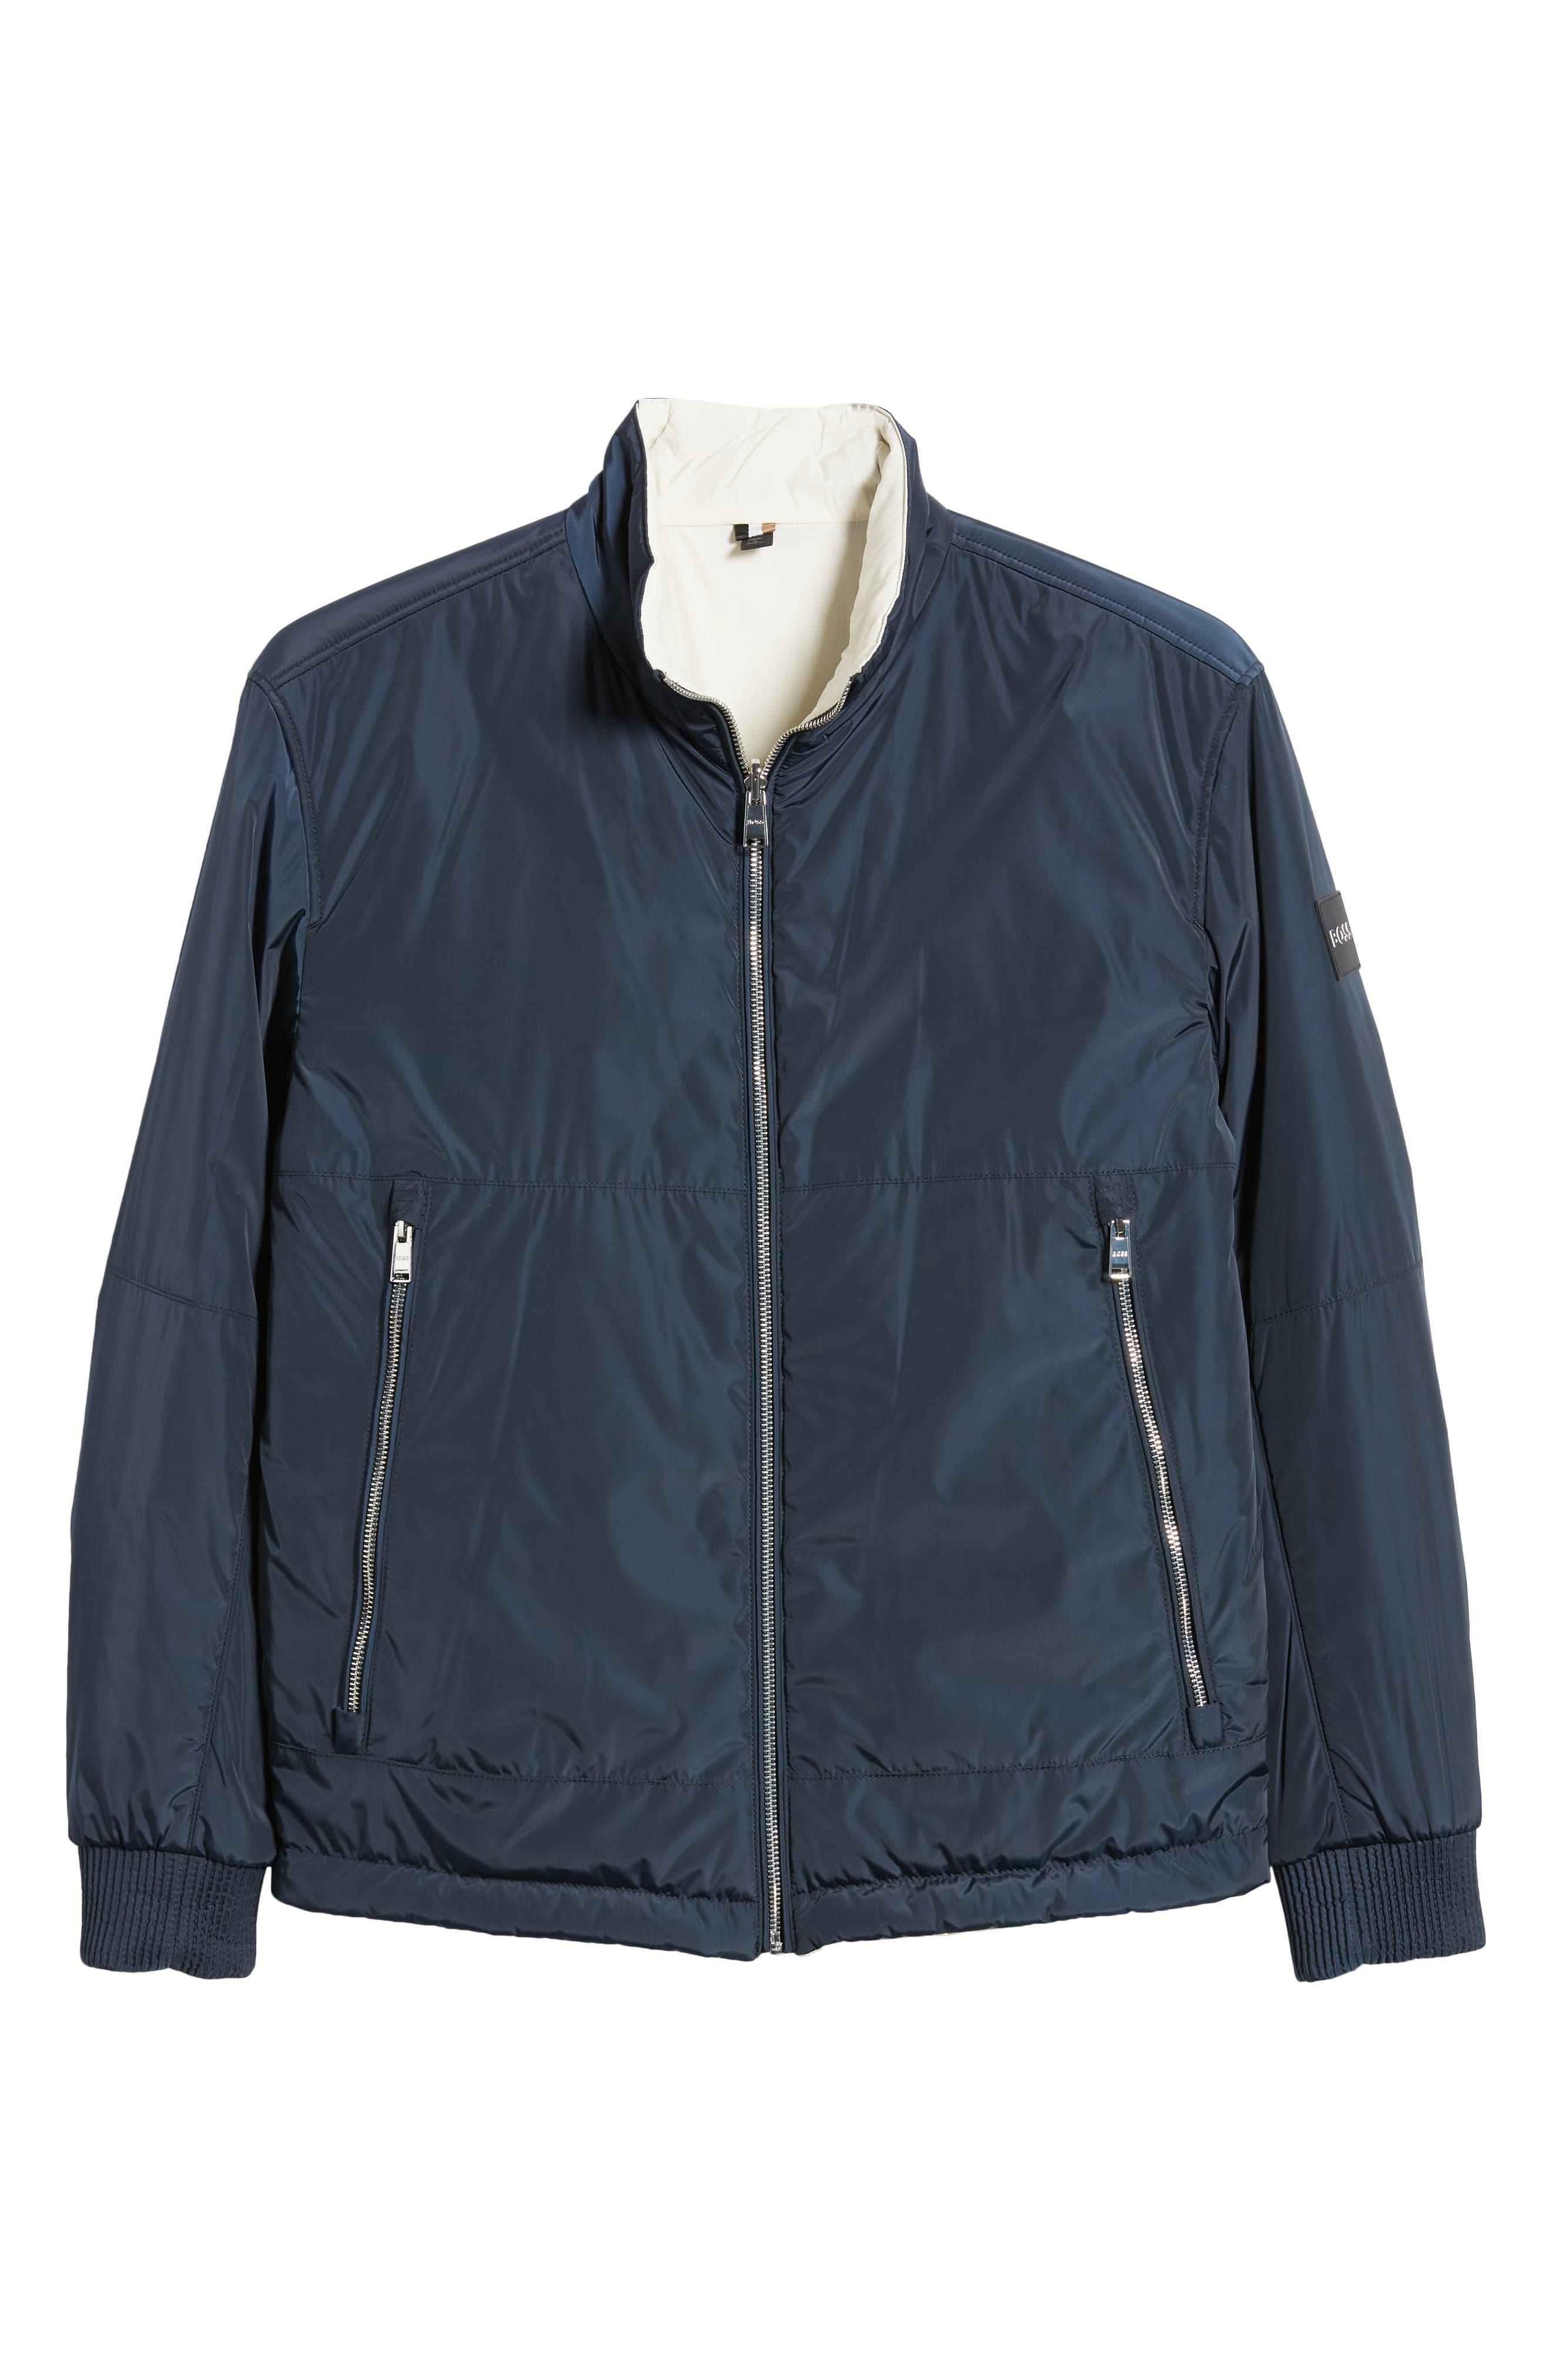 BOSS by HUGO BOSS Crepin Zip-up Jacket in Blue for Men | Lyst